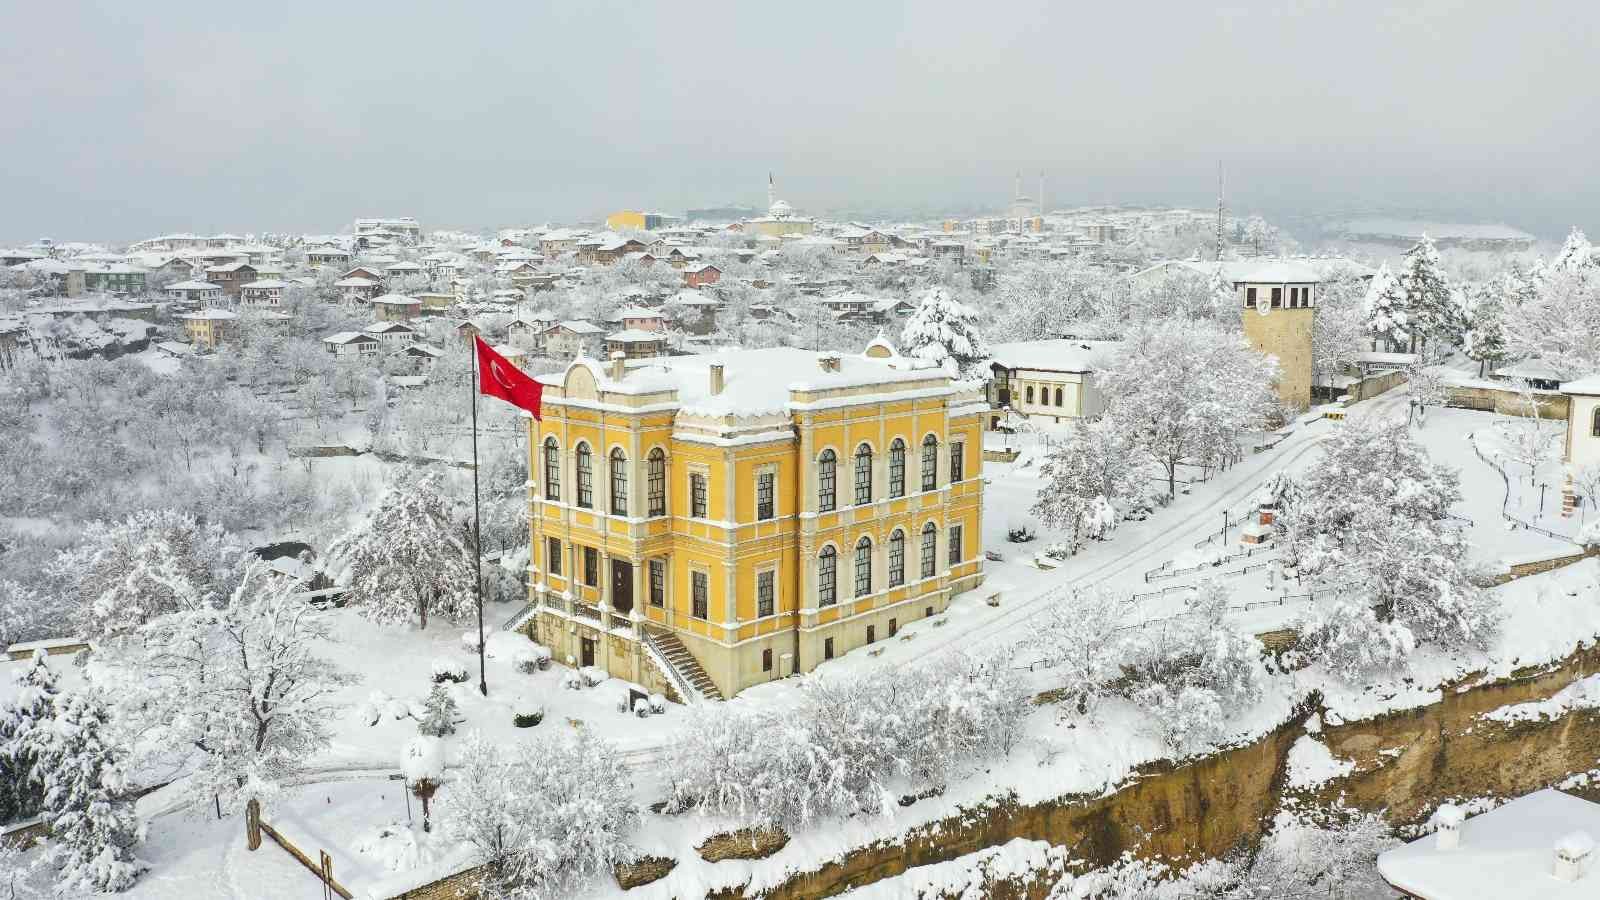 Osmanlı kenti beyaz örtüyle kaplandı #karabuk